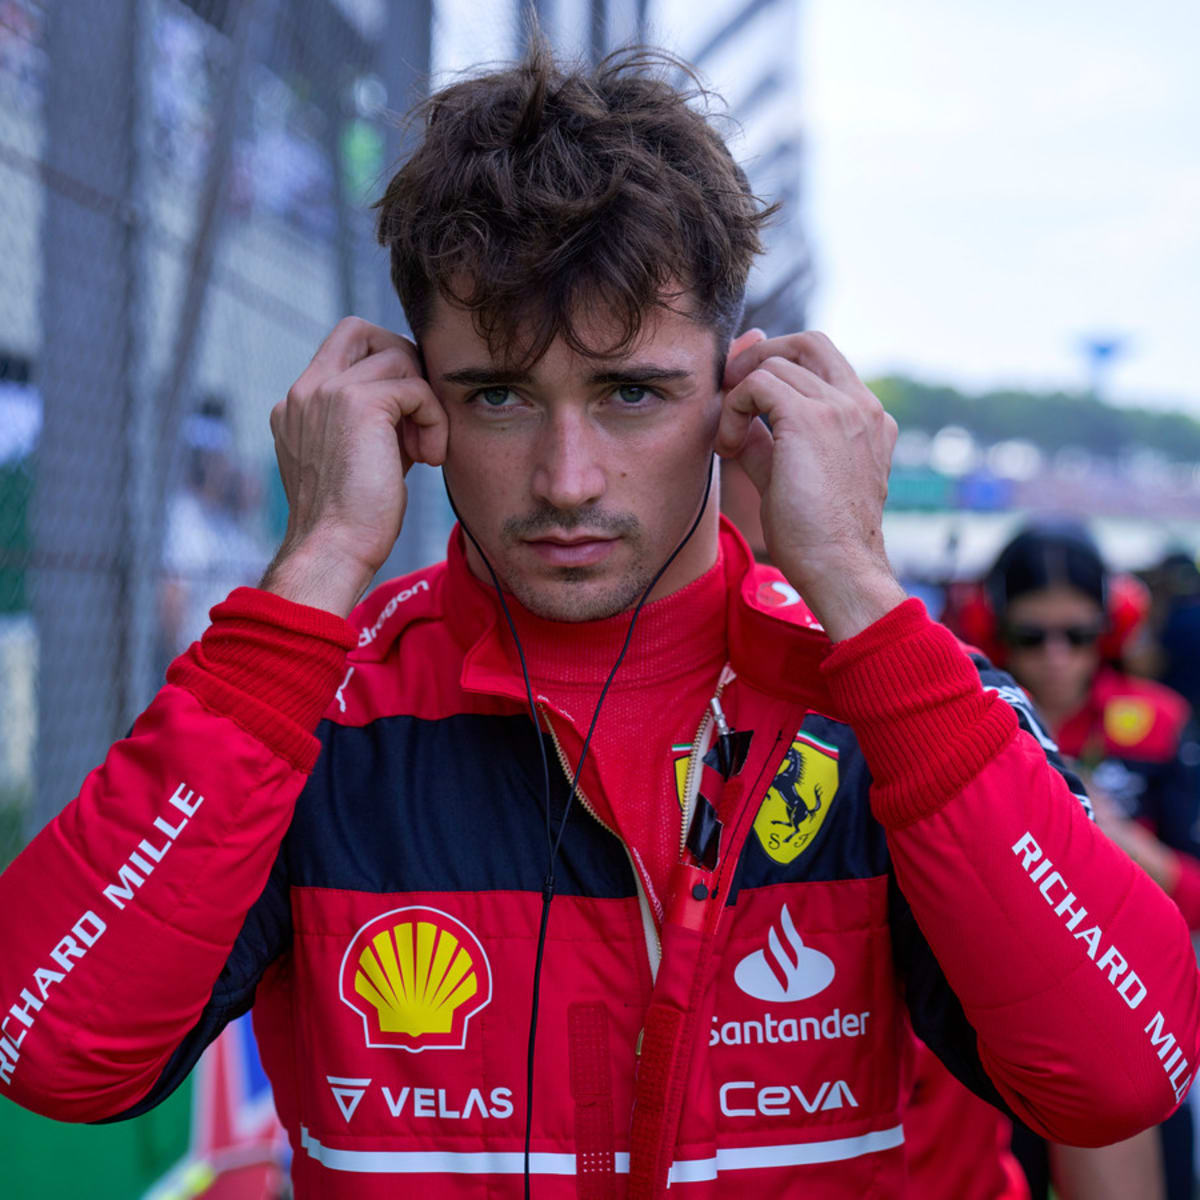 Leclerc Ferrari, charles, charles leclerc, f1, formula, formula 1